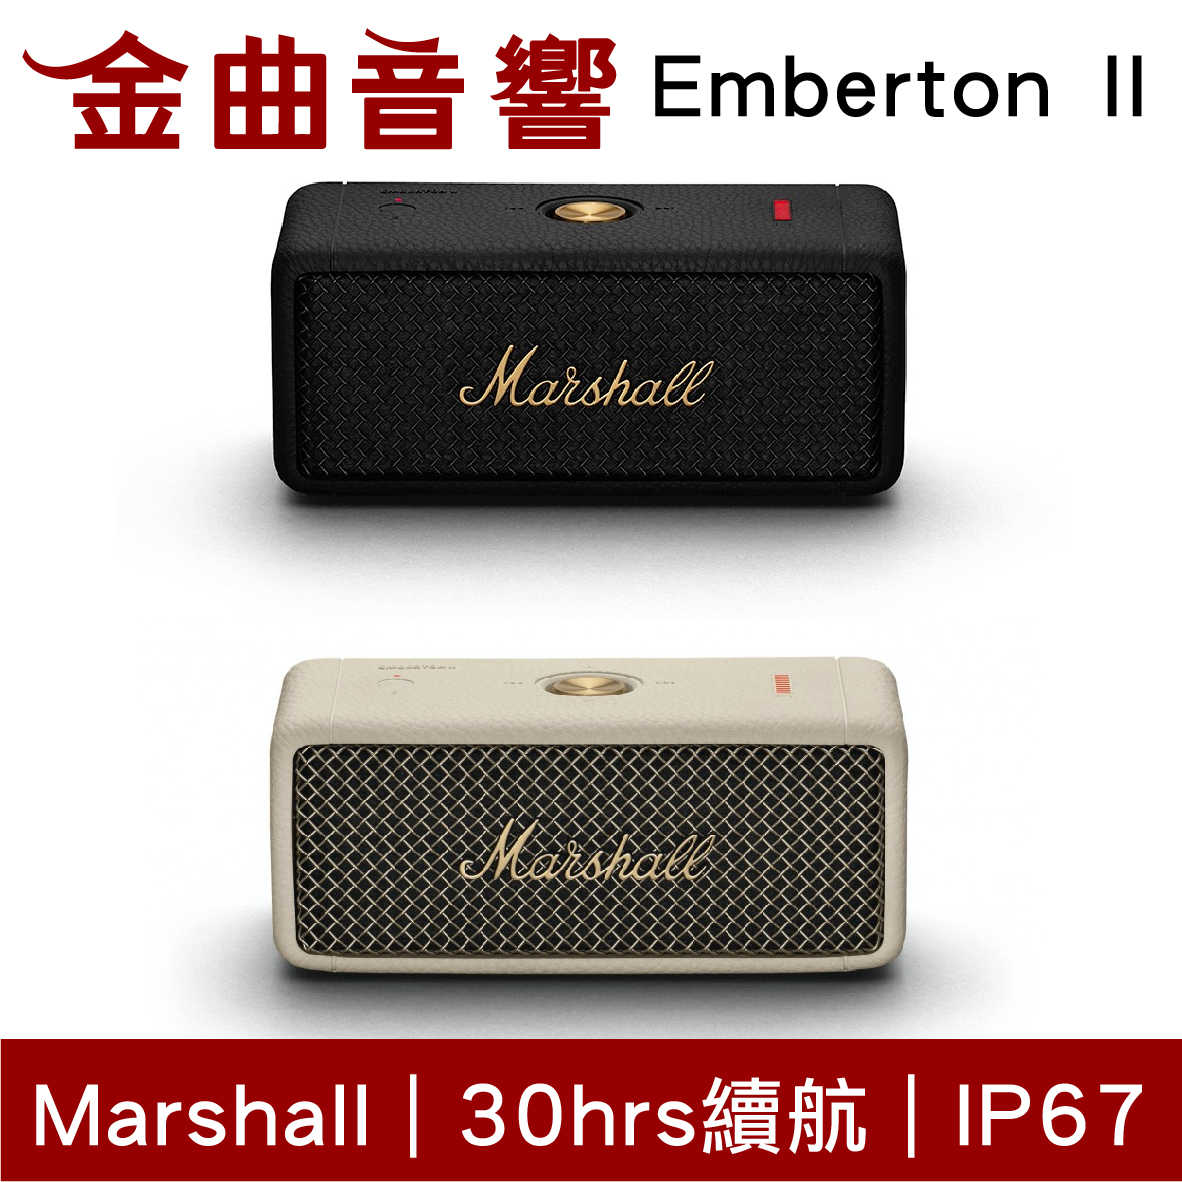 Marshall 馬歇爾 Emberton II 二代 IPX7 多台串聯 可攜式 藍芽 喇叭 | 金曲音響